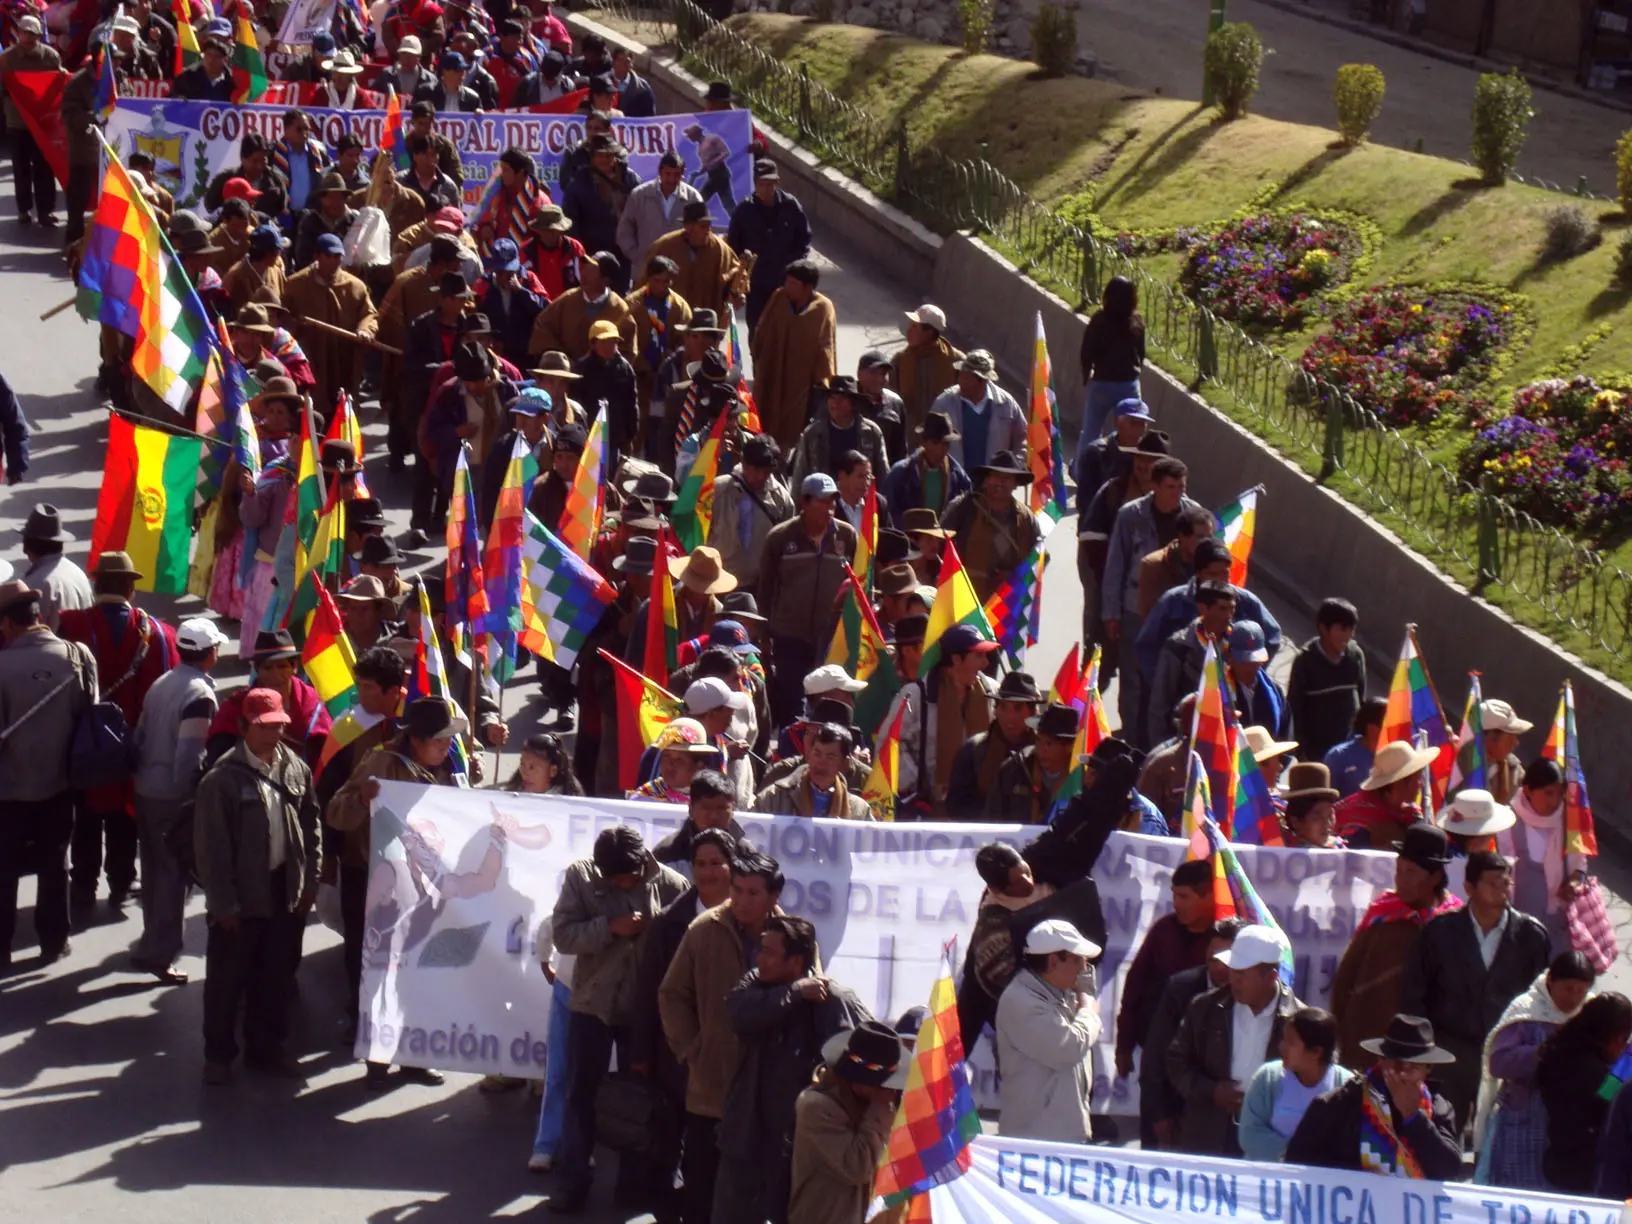 La marcia degli indigeni in Bolivia non si arresta